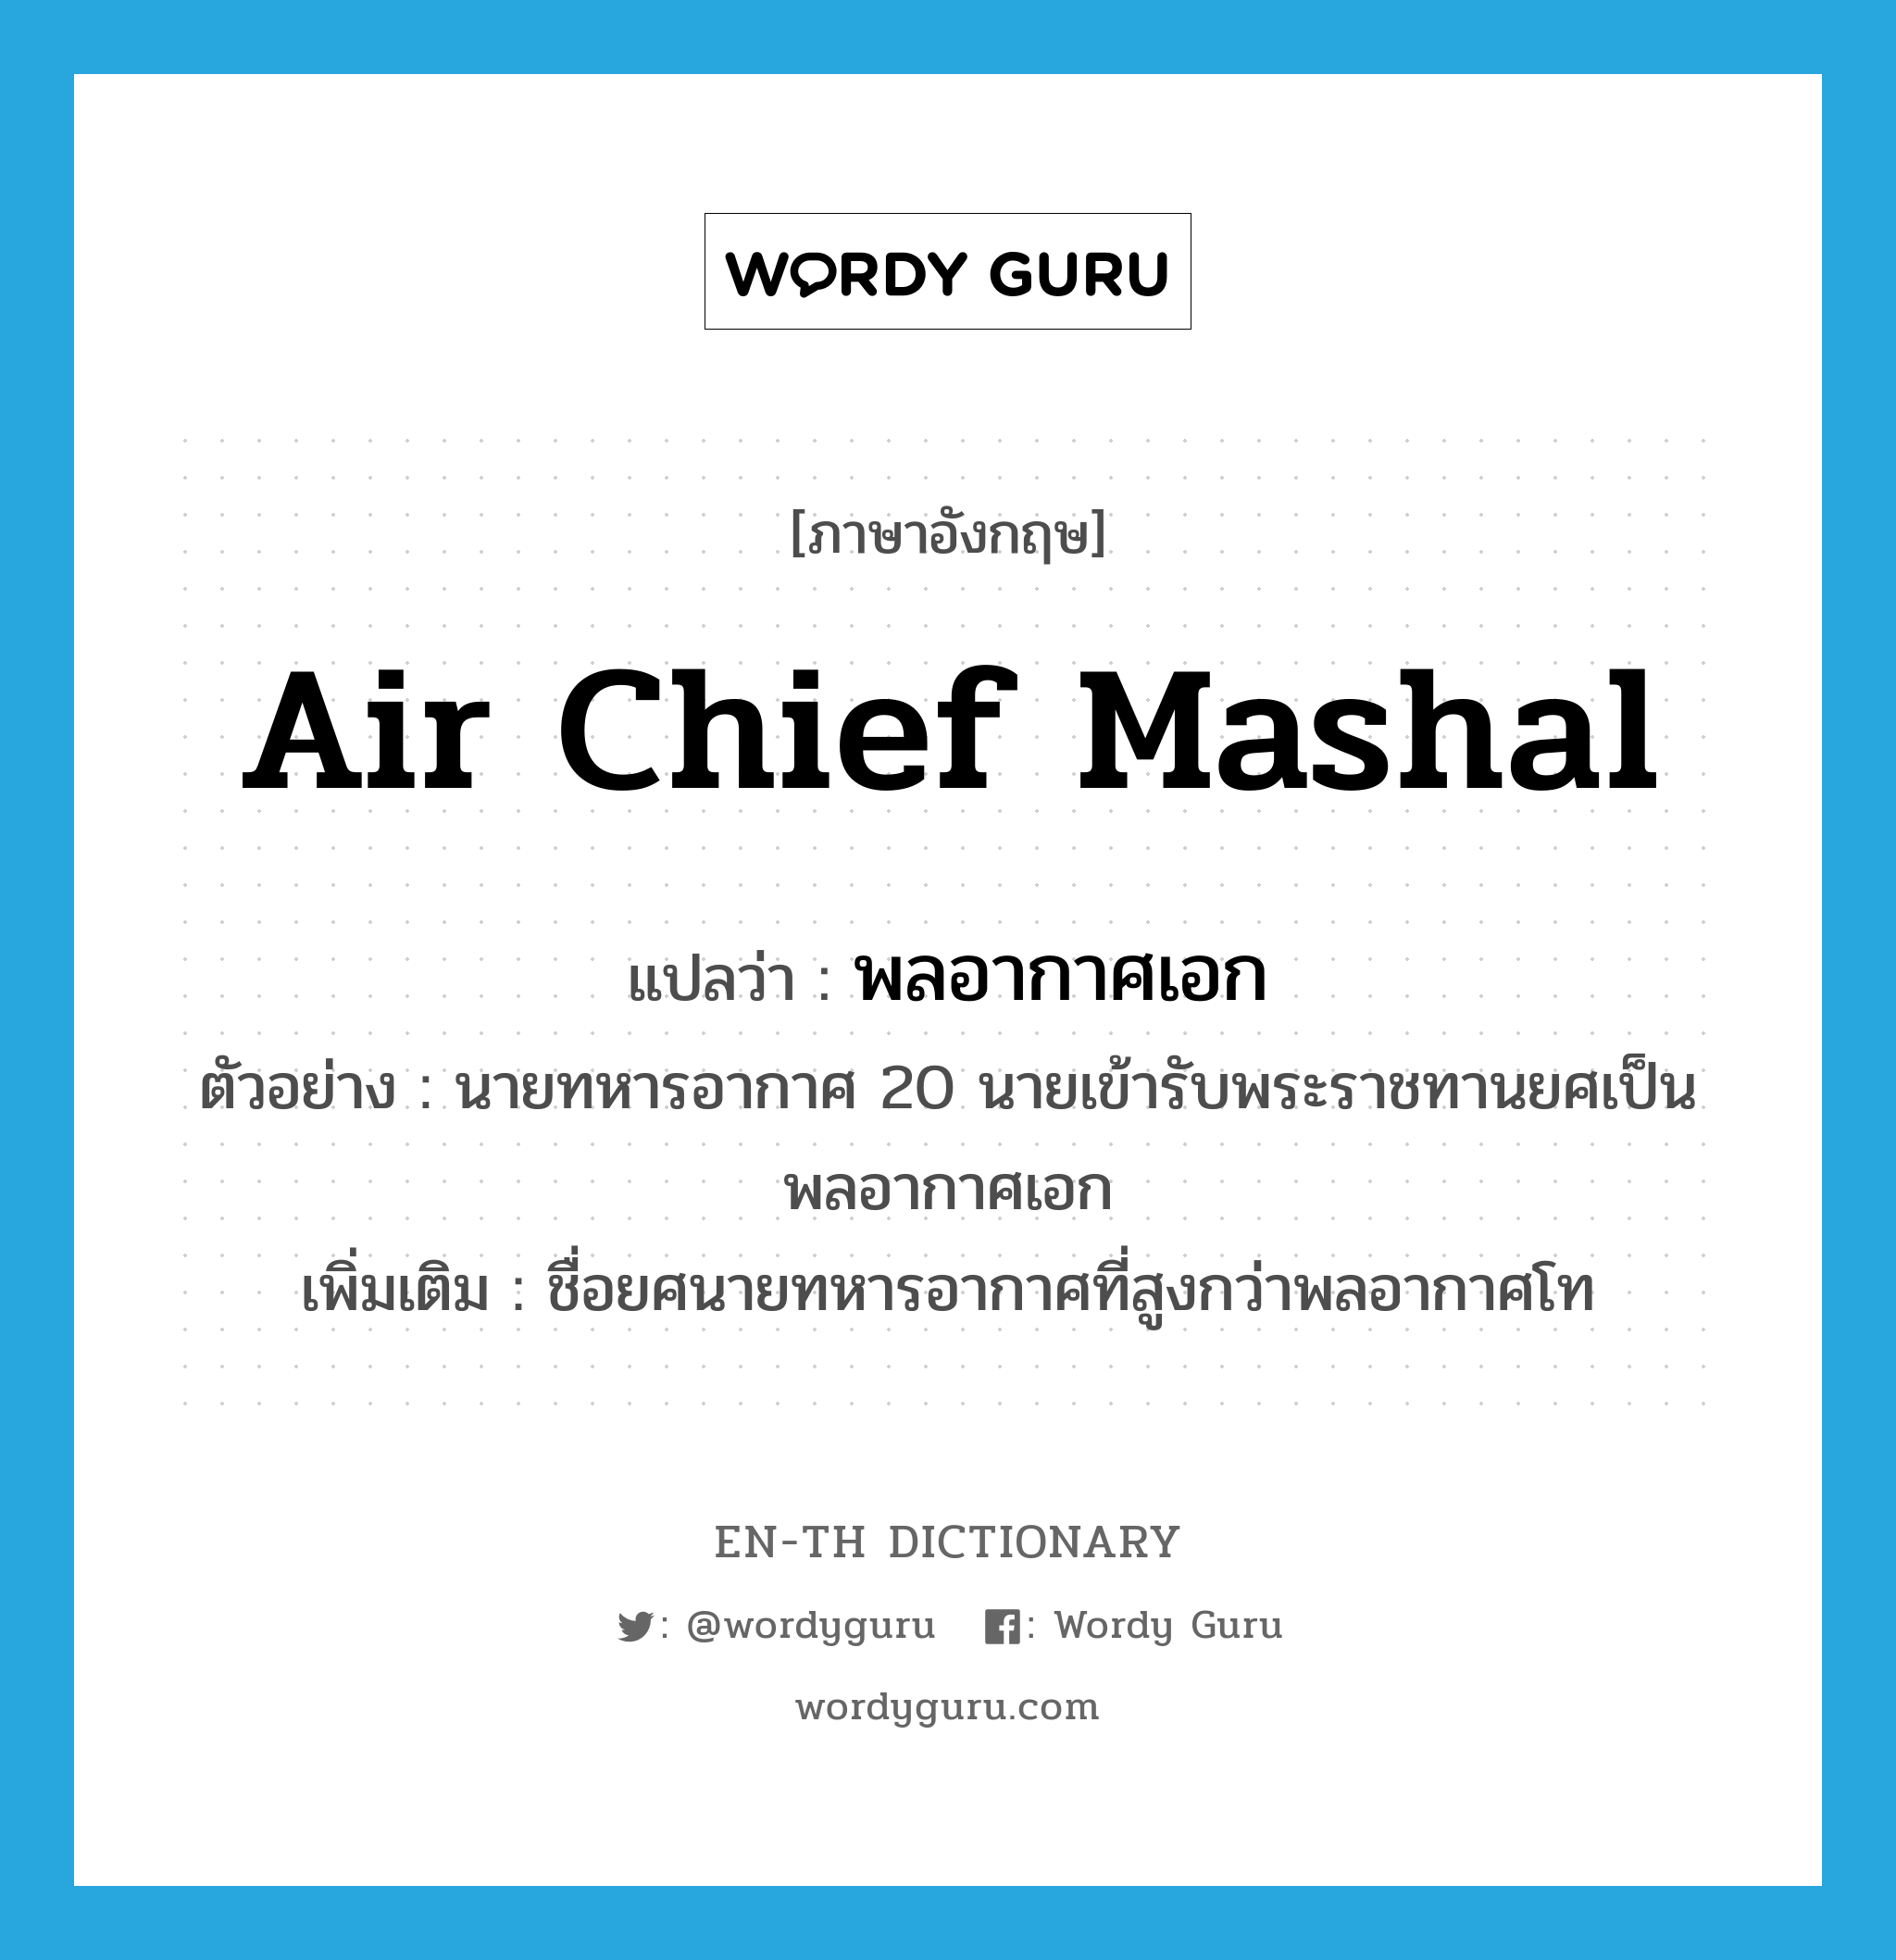 พลอากาศเอก ภาษาอังกฤษ?, คำศัพท์ภาษาอังกฤษ พลอากาศเอก แปลว่า Air Chief Mashal ประเภท N ตัวอย่าง นายทหารอากาศ 20 นายเข้ารับพระราชทานยศเป็นพลอากาศเอก เพิ่มเติม ชื่อยศนายทหารอากาศที่สูงกว่าพลอากาศโท หมวด N